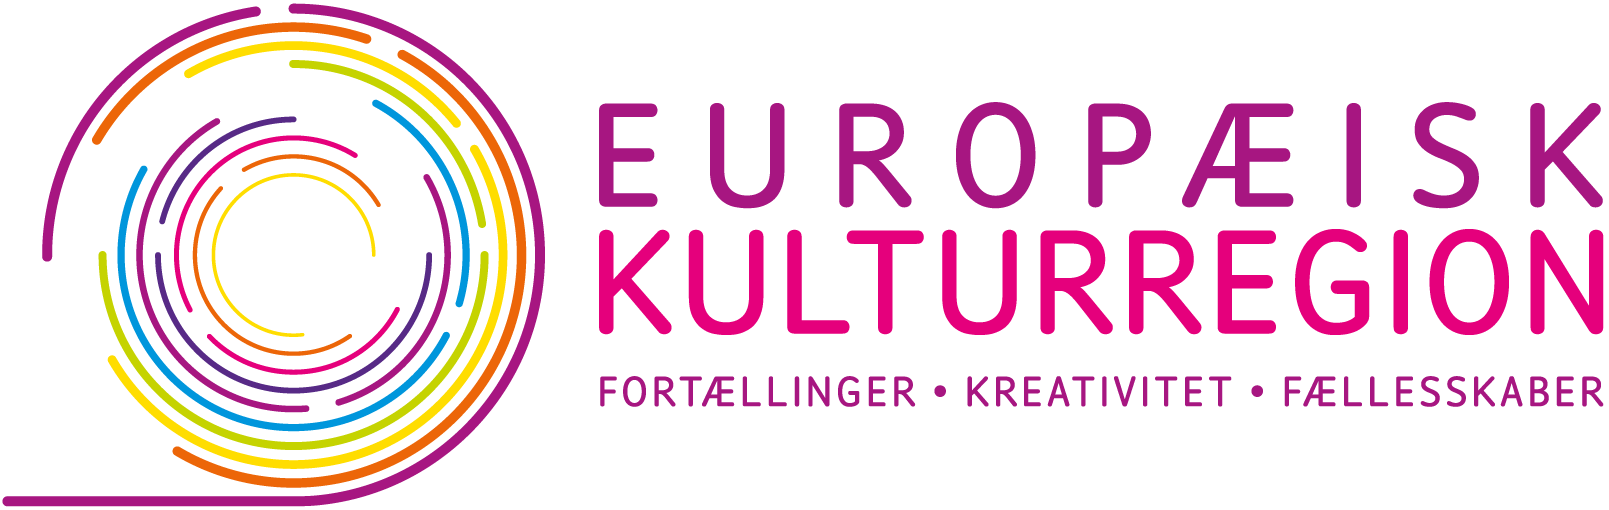 Europæisk Kulturregion Fortællinger - Kreativitet - Fællesskaber